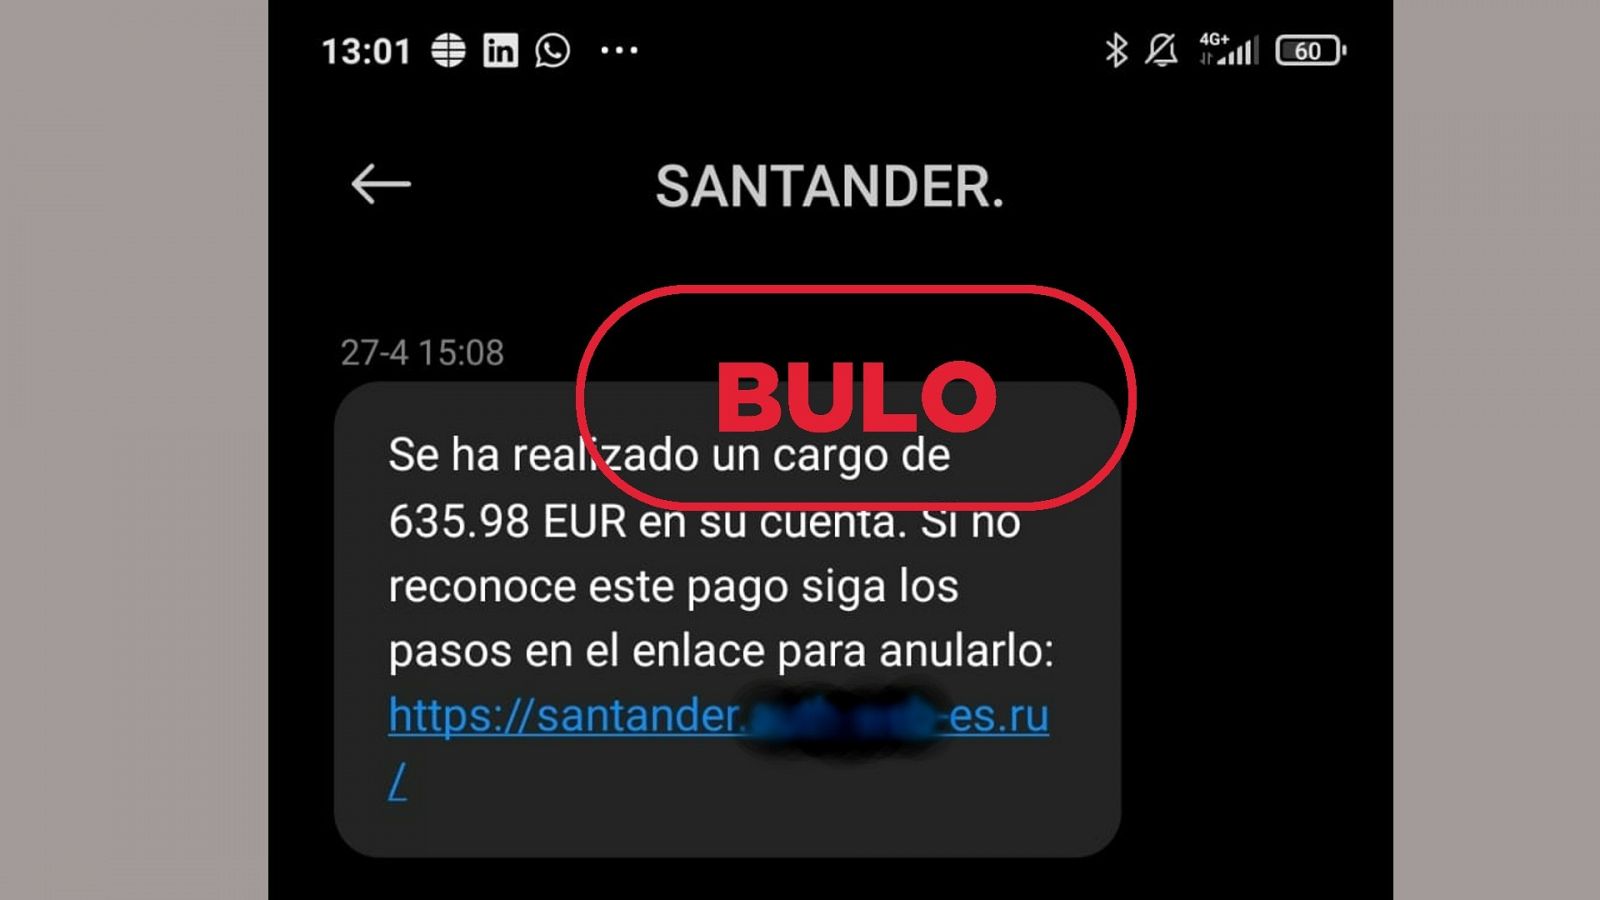 El SMS fraudulento que anuncia un cargo de 635,98 euros en una cuenta del Banco Santander, con el sello bulo en rojo de VerificaRTVE